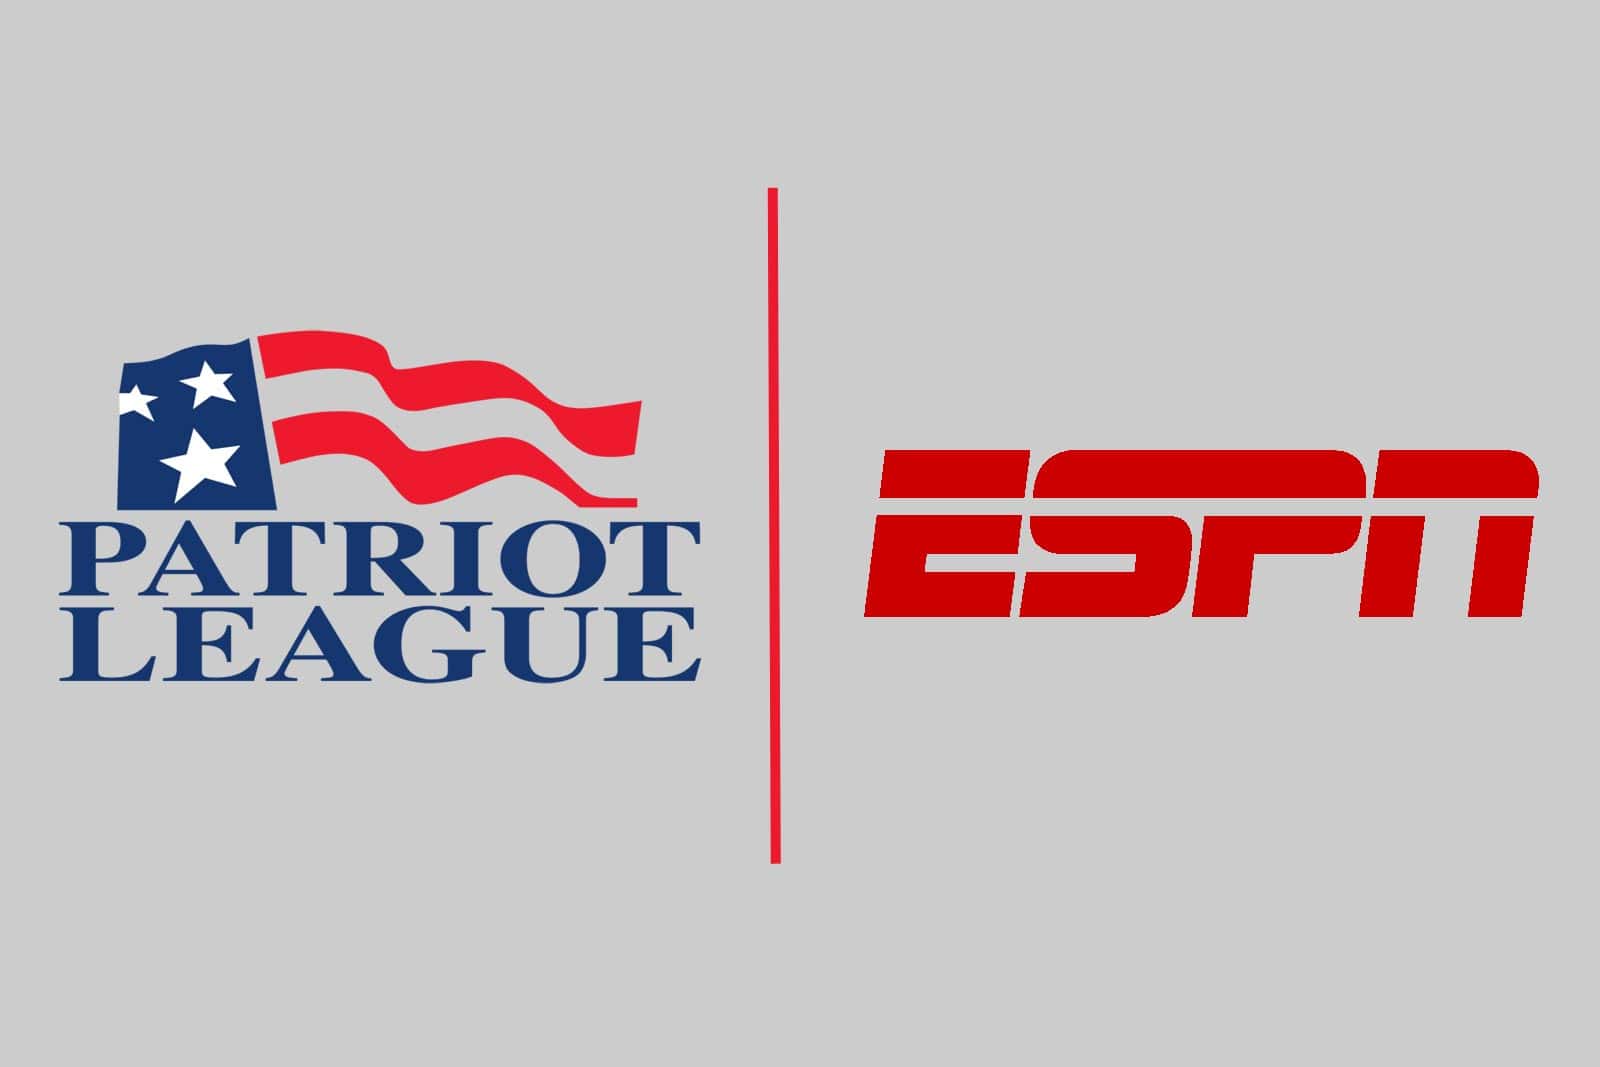 Patriot League-ESPN